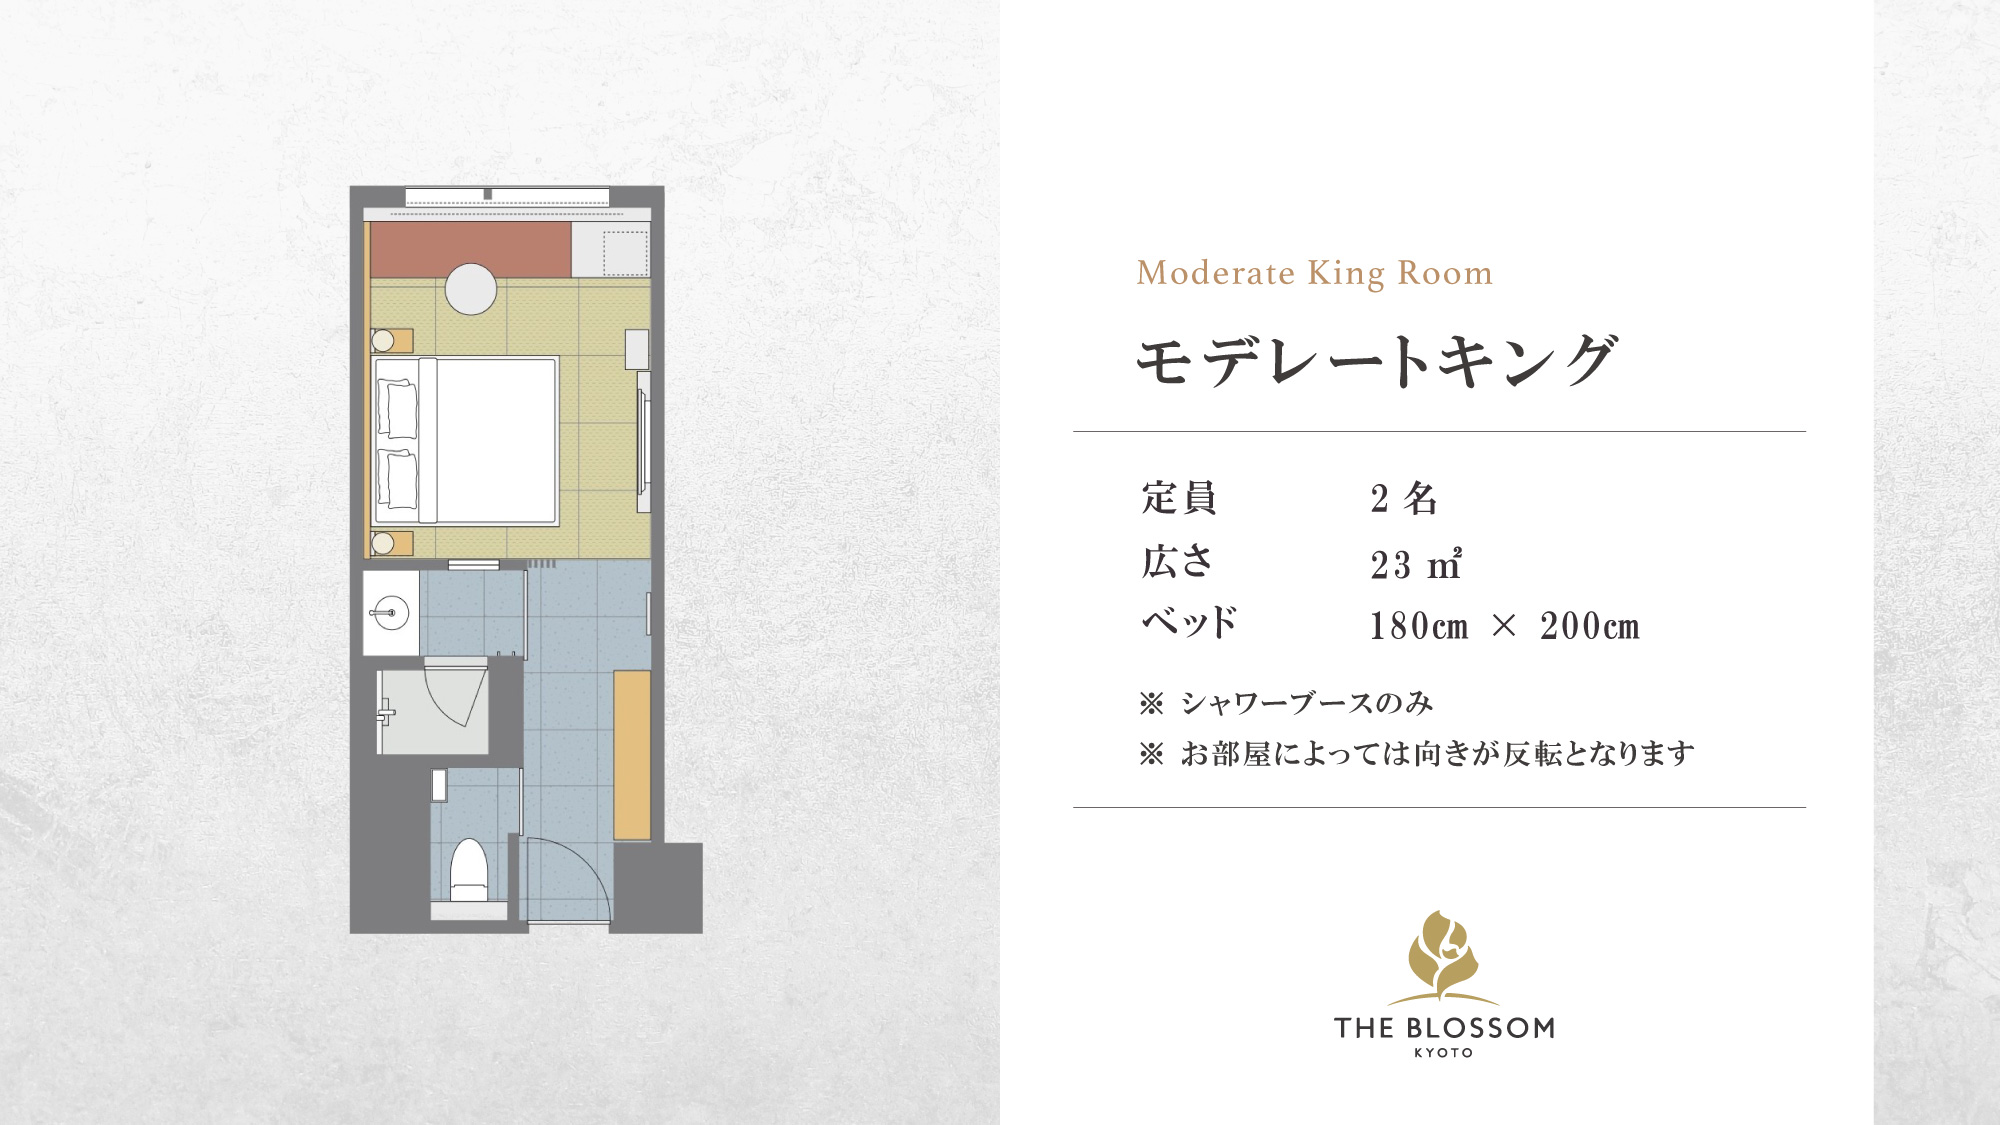 【モデレートキング 23㎡】 キングサイズベッドを備えた畳敷きのお部屋